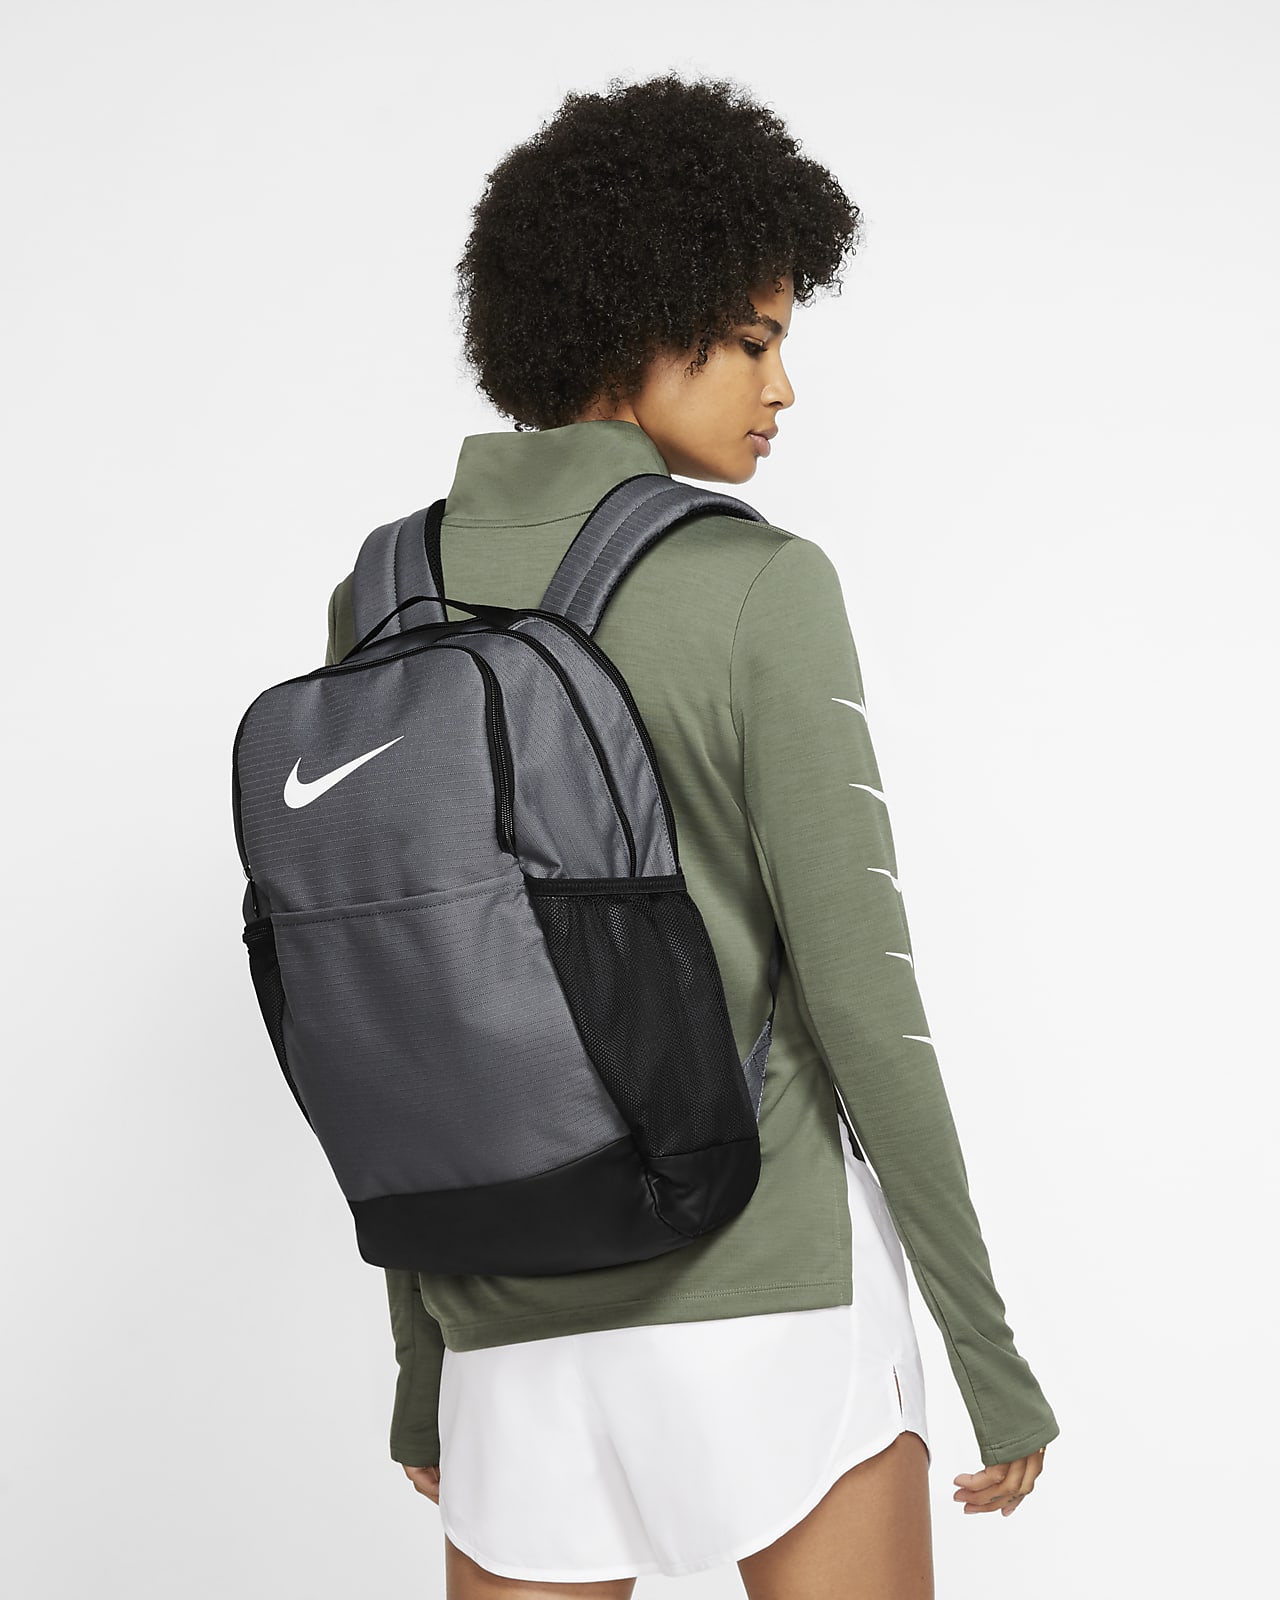 nike grey brasilia backpack